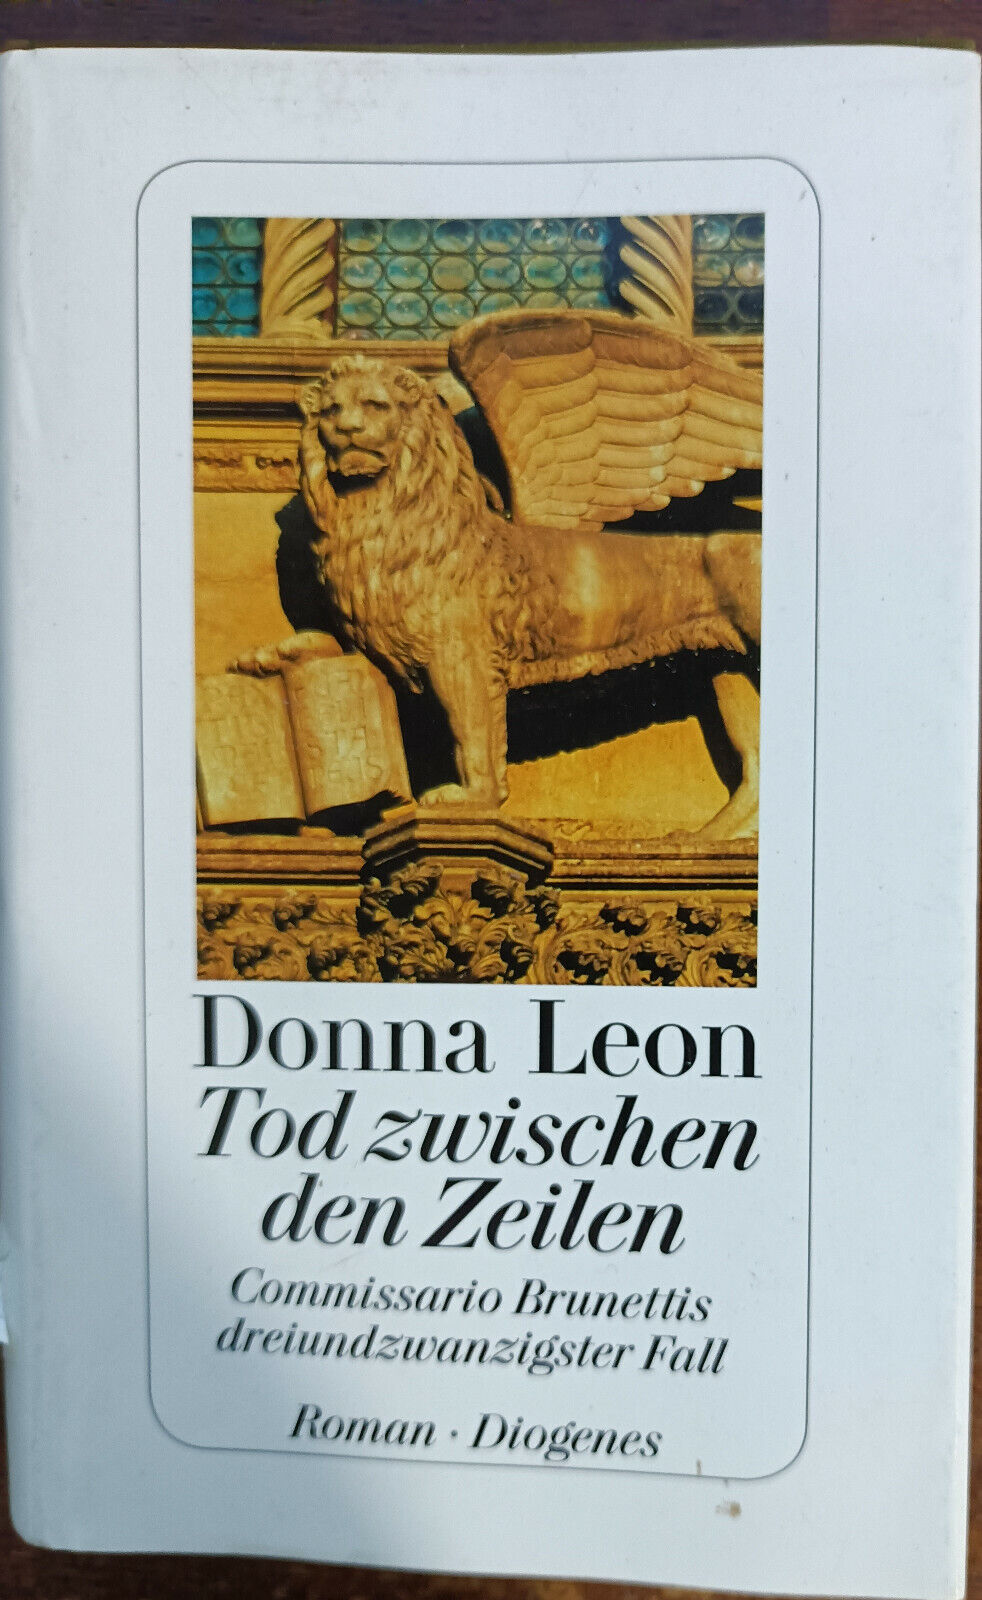 Tod zwischen den Zeilen - Donna Leon - Diogenes, 2015 - A